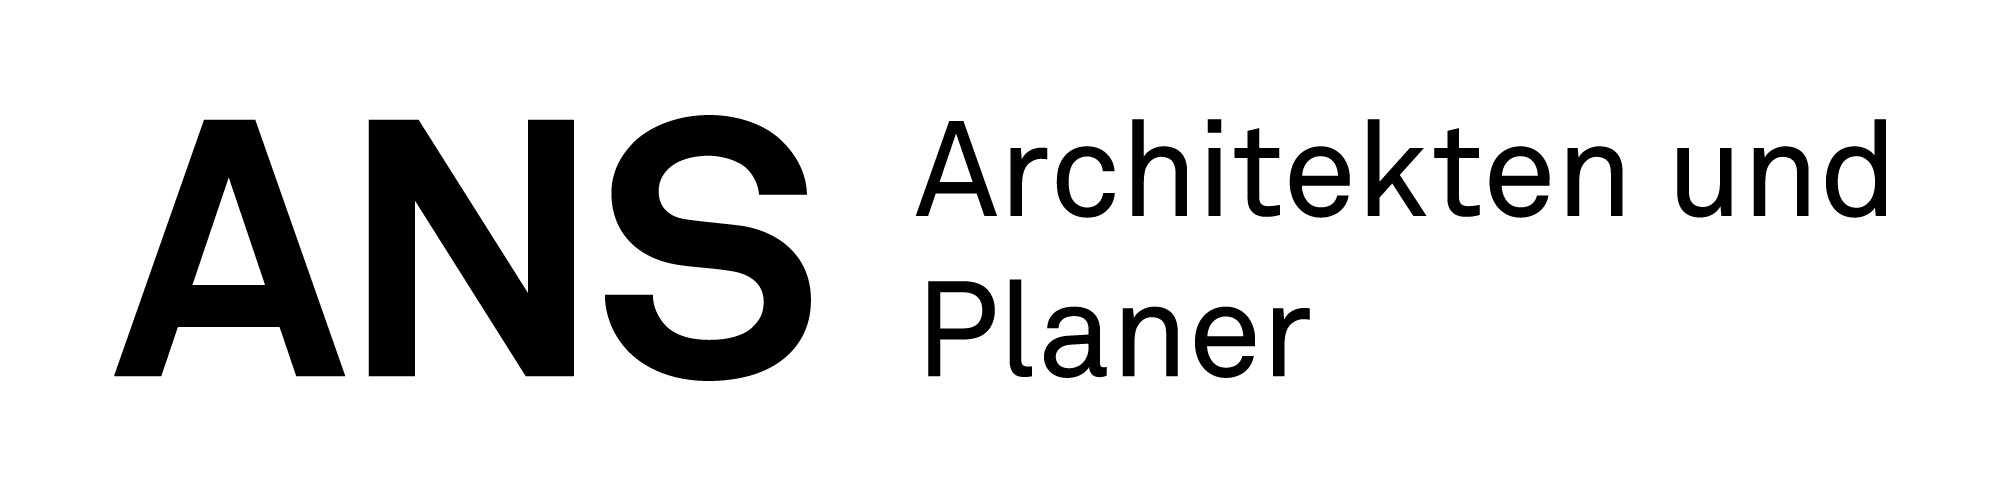 ANS Architekten und Planer SIA AG